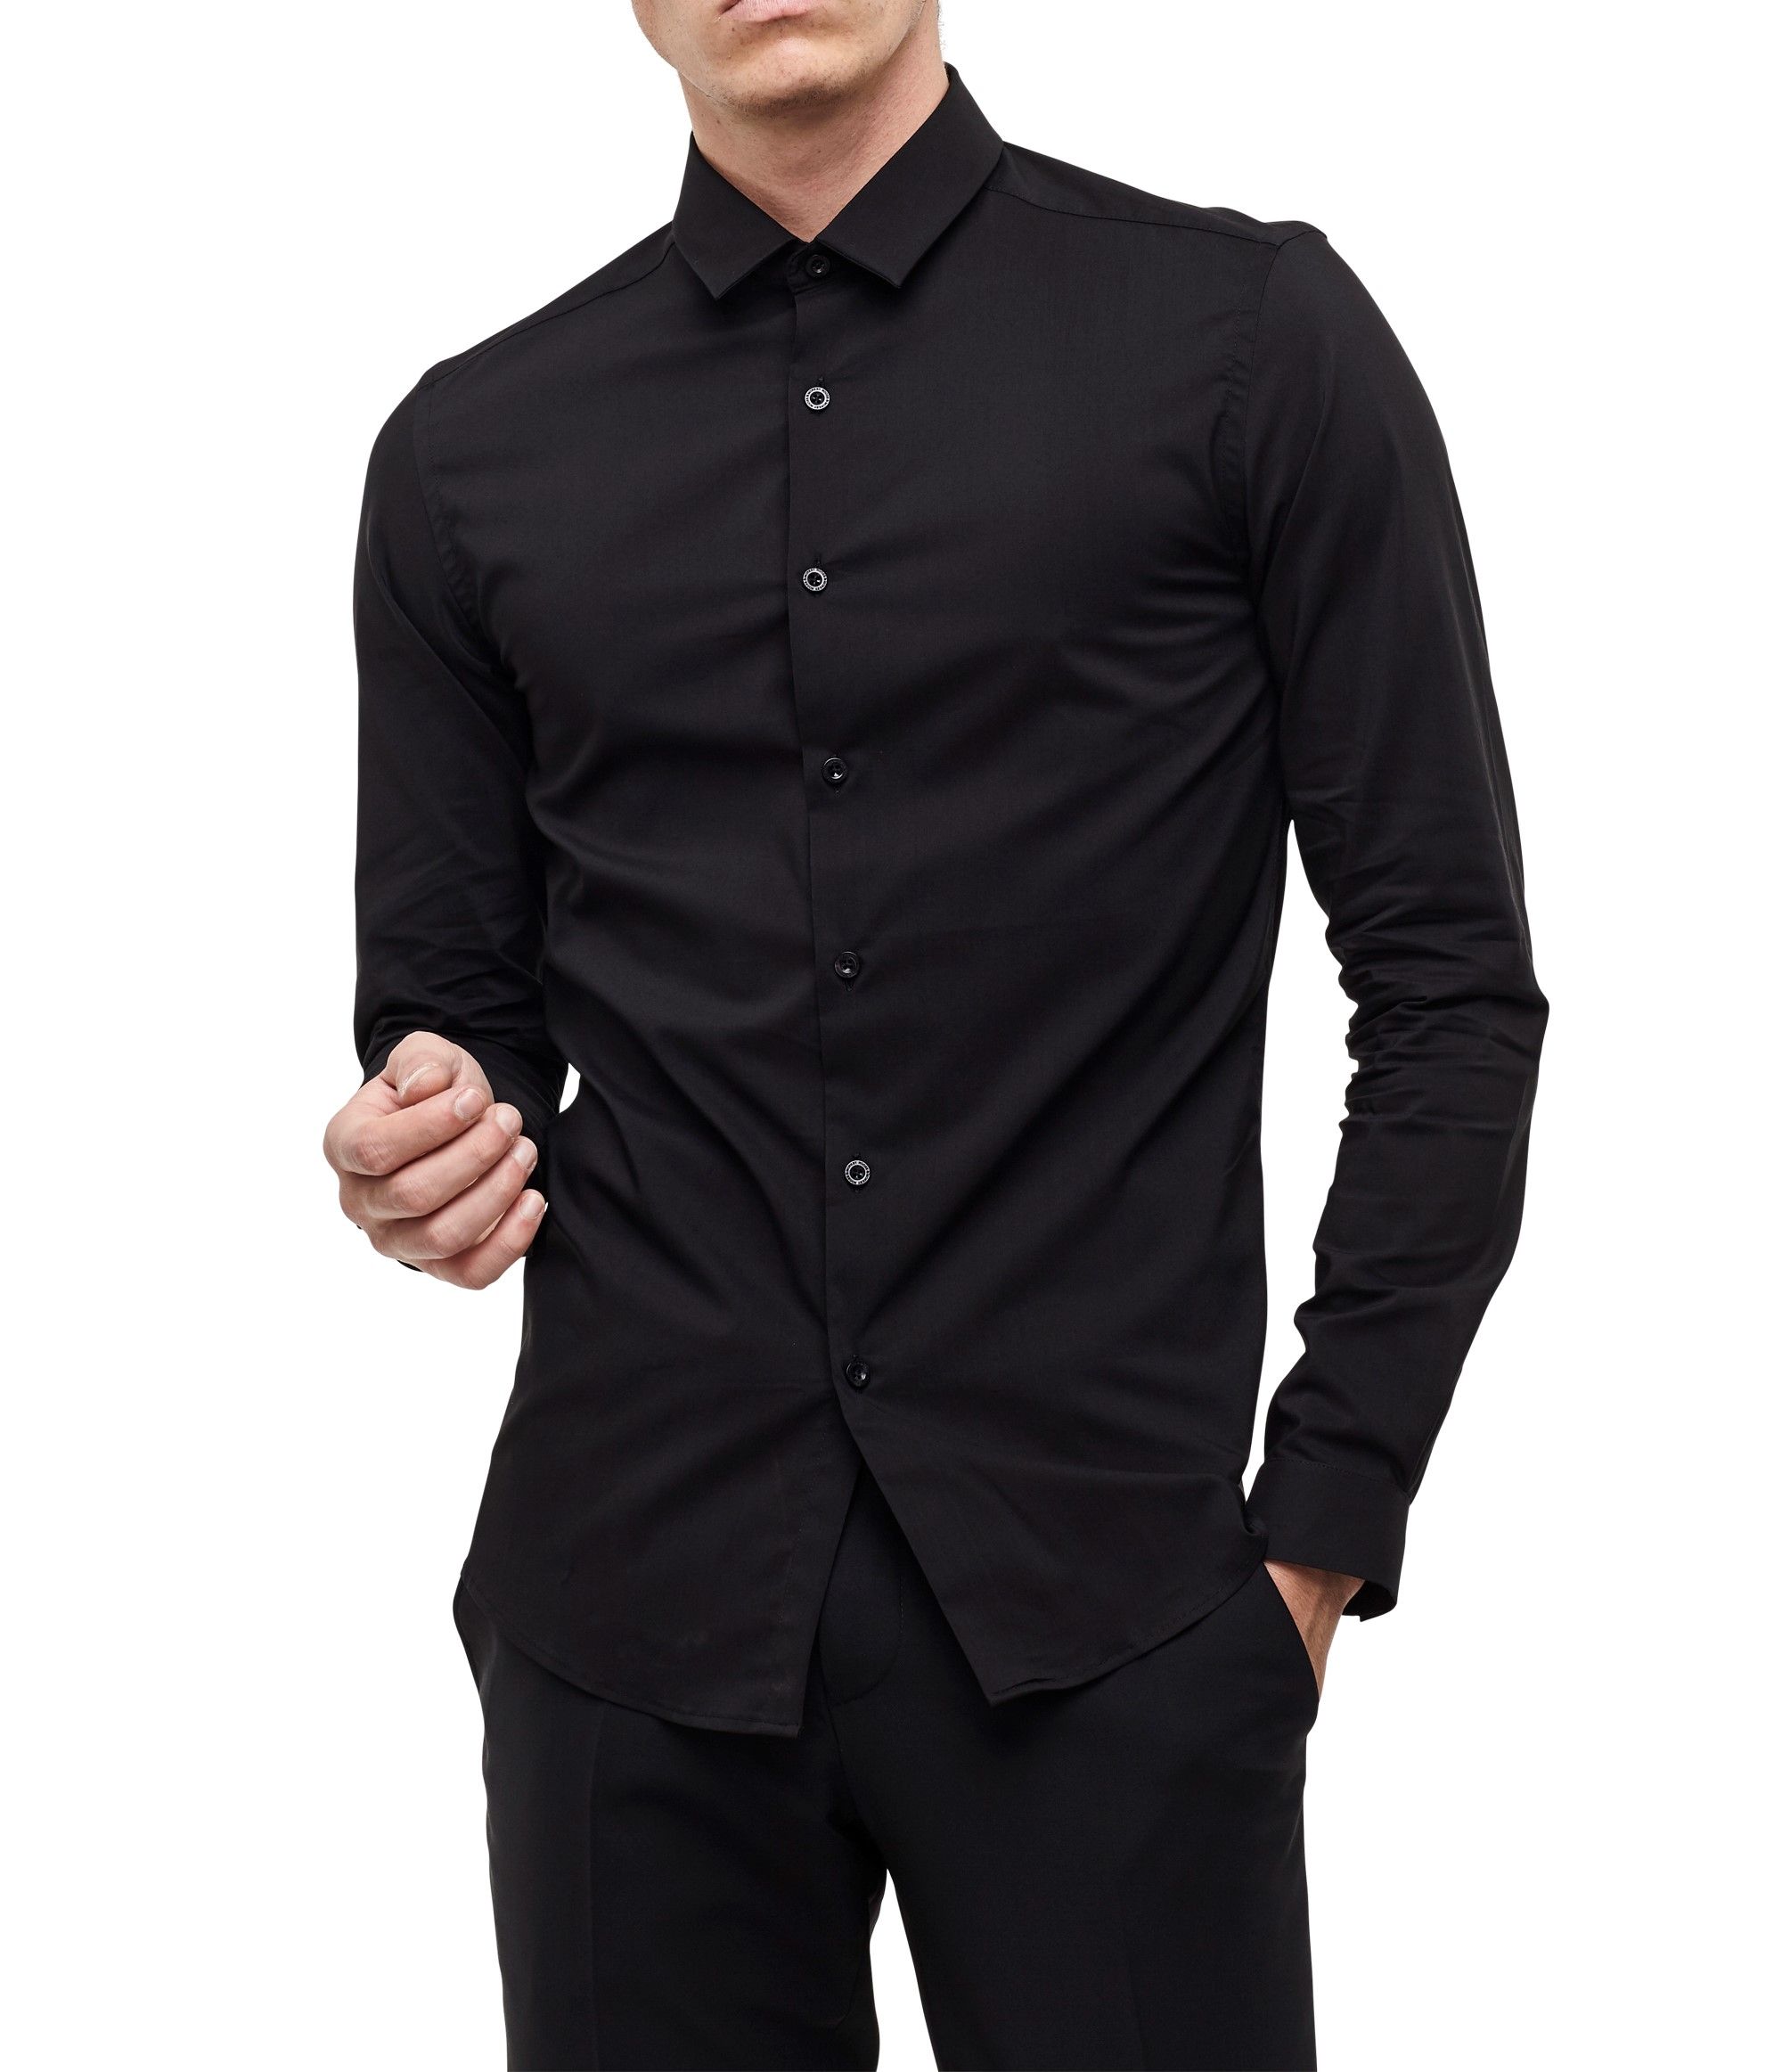 Черная рубашка. Черная рубашка Коллинз model 268. Климбер мужская черная рубашка. Мужчина в черной рубашке. Стильная черная рубашка мужская.